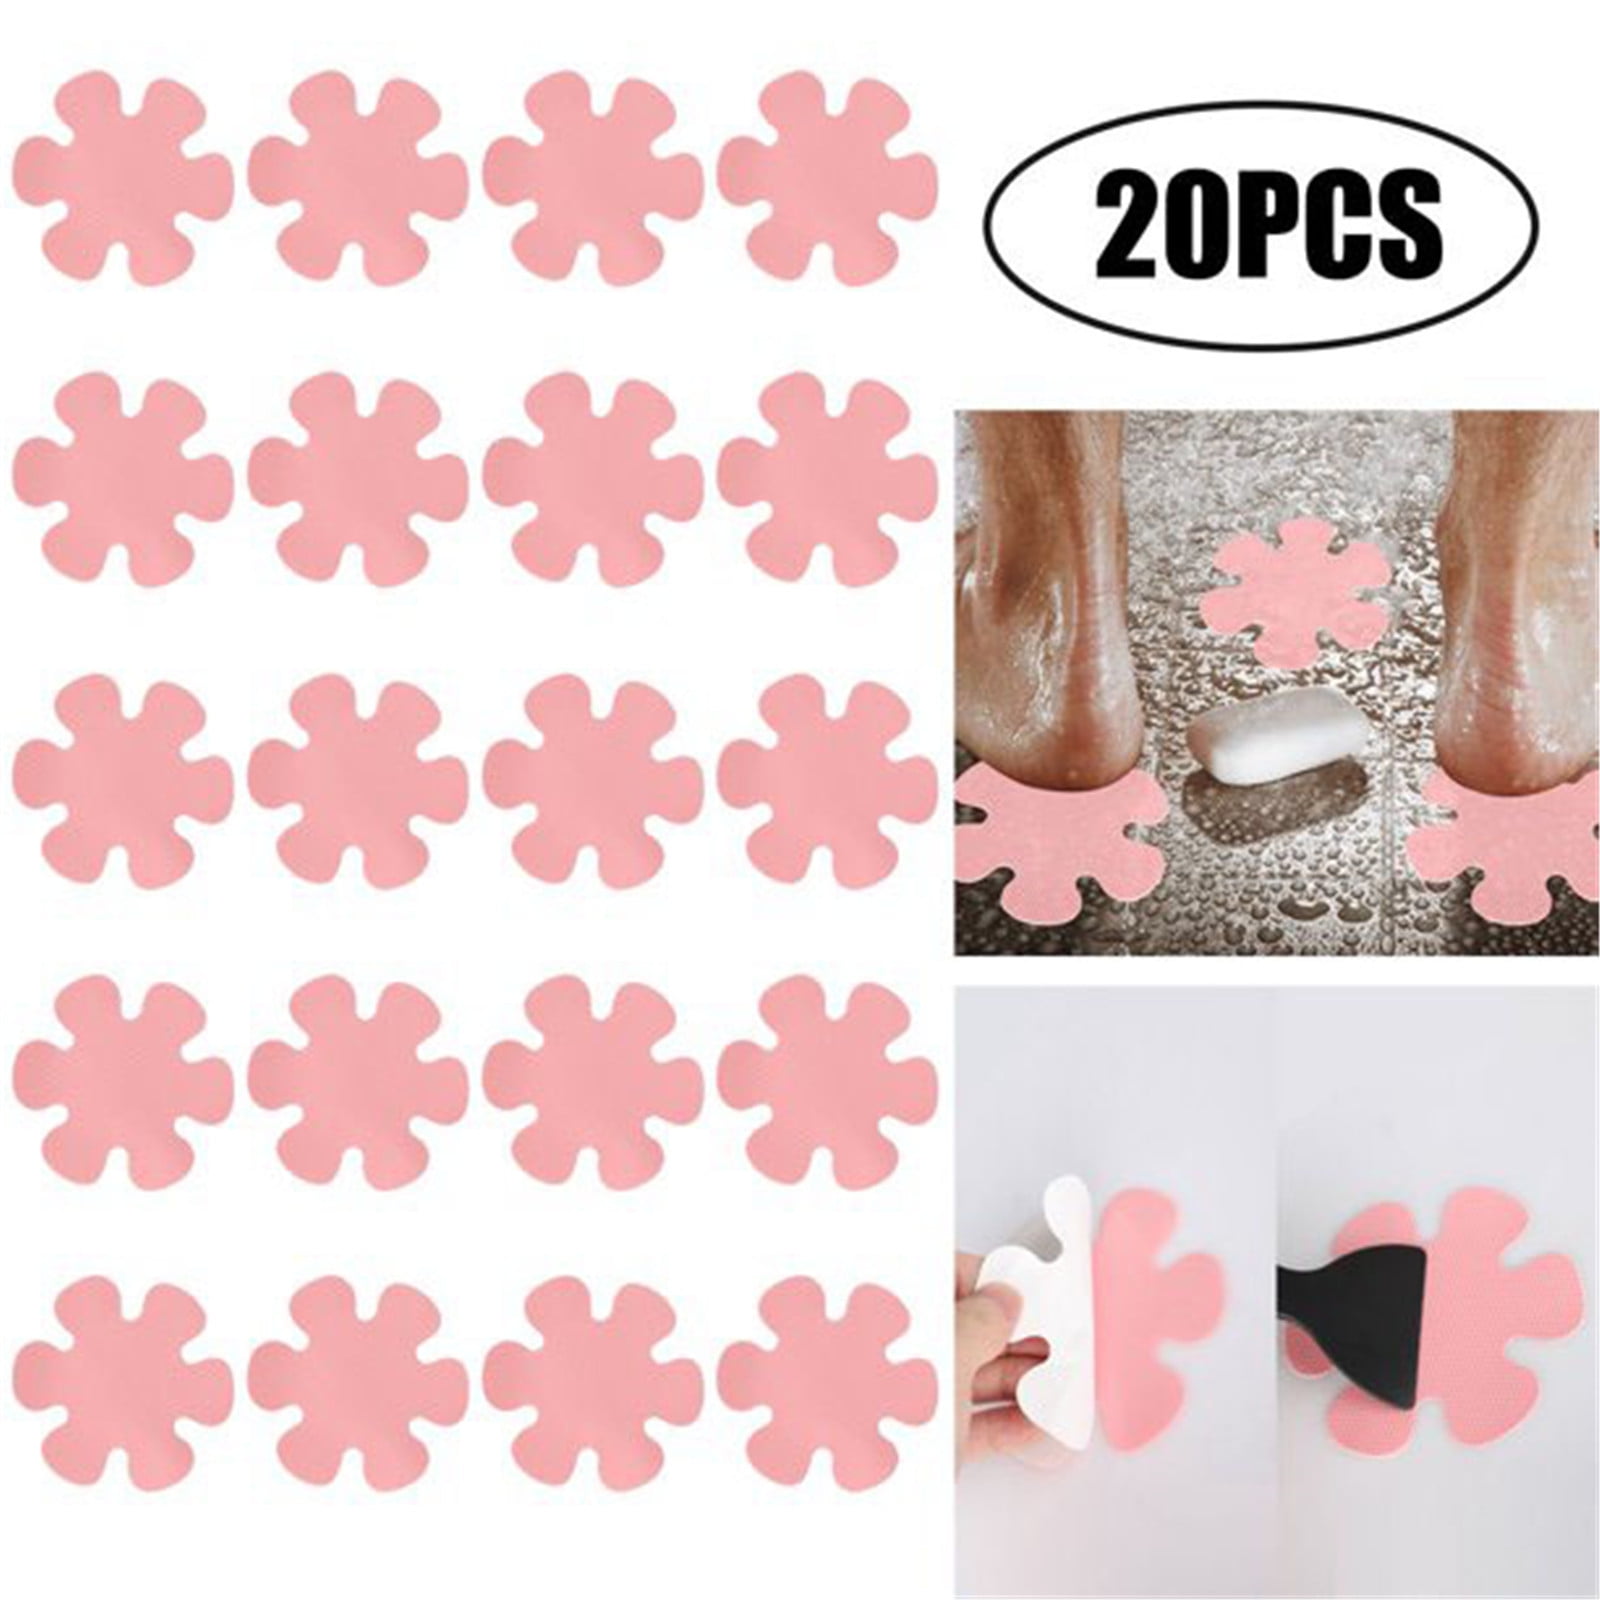 20Pcs 4" Flower Safety Treads Non-Slip Applique Sticker Tub Strip Floor Decal US 